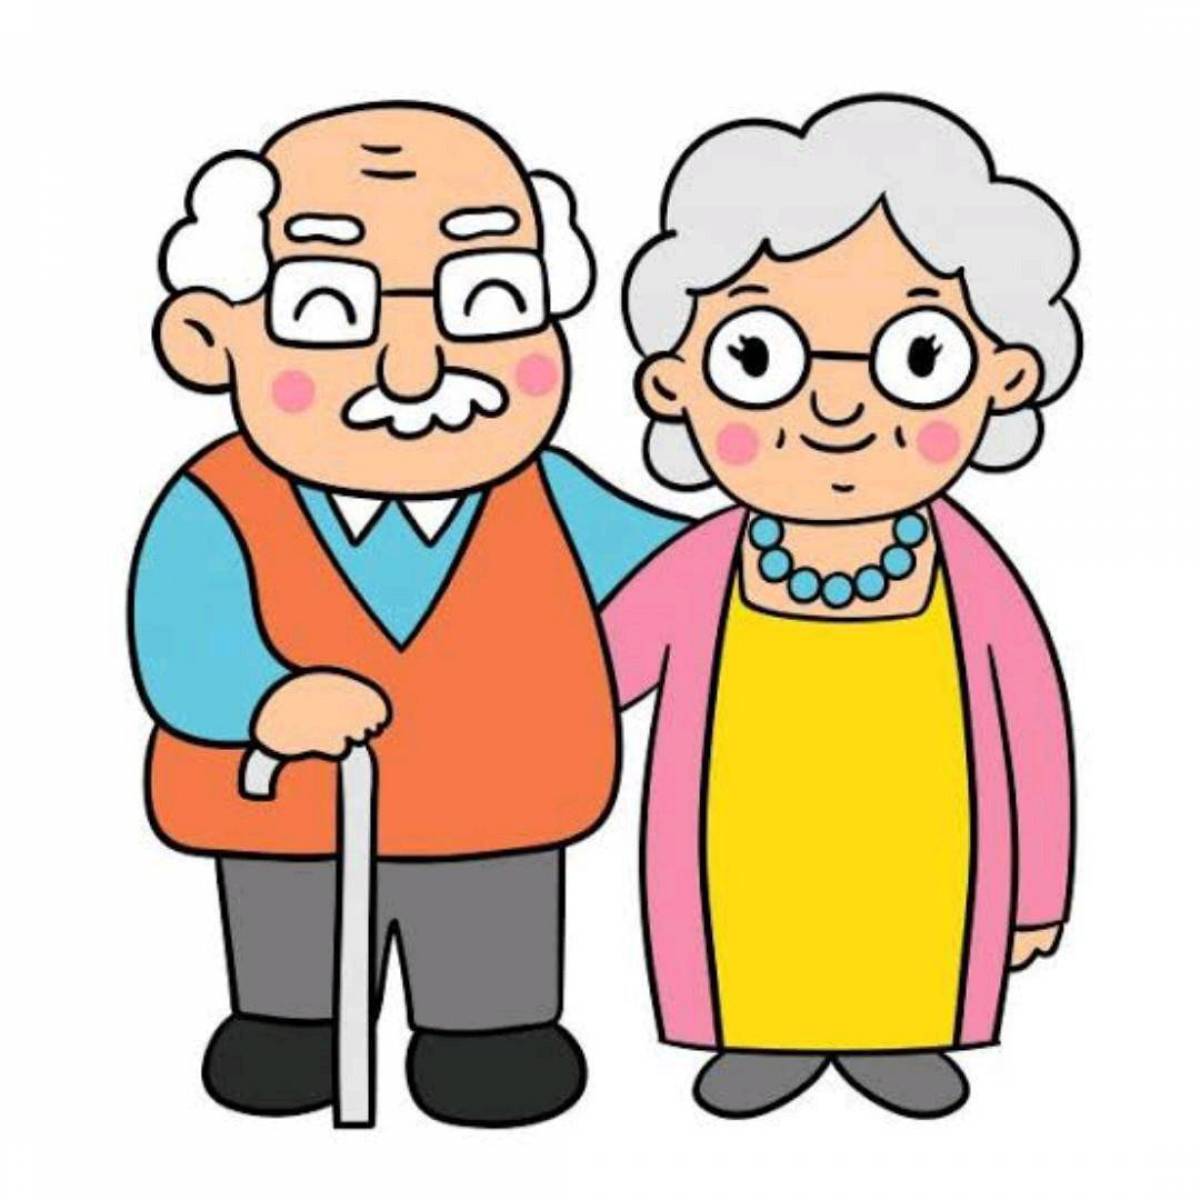 Картинка бабушка и дедушка. Бабушка и дедушка. Бабушка и дедушка рисунок. Бабушка рядышком с дедушкой. Бабушка и дедушка мультяшные.